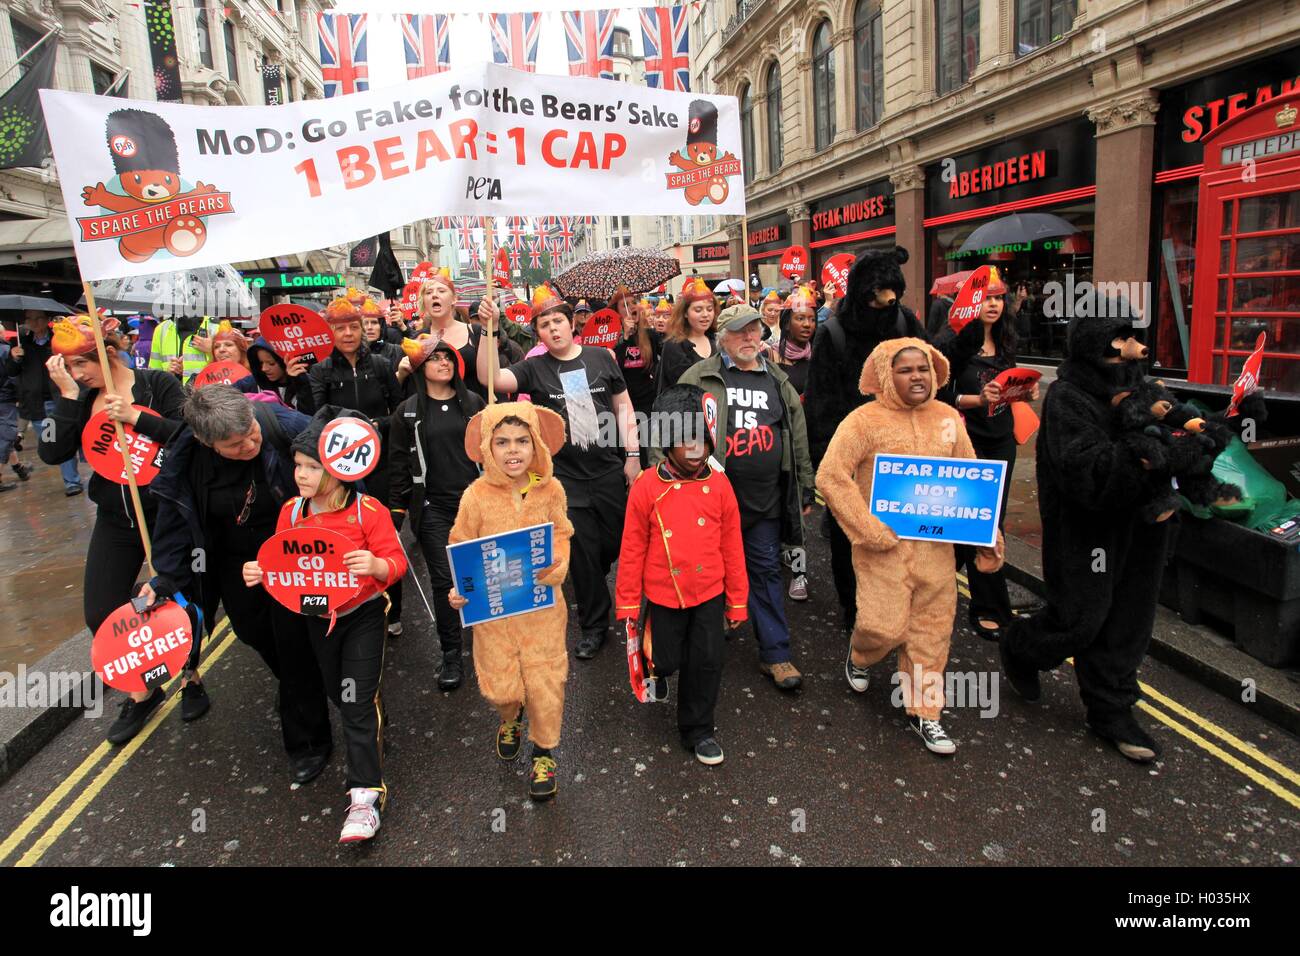 PETA-Protest gegen die Verwendung von echtem Pelz Kappen (MOD) des Verteidigungsministeriums, London, UK. Stockfoto